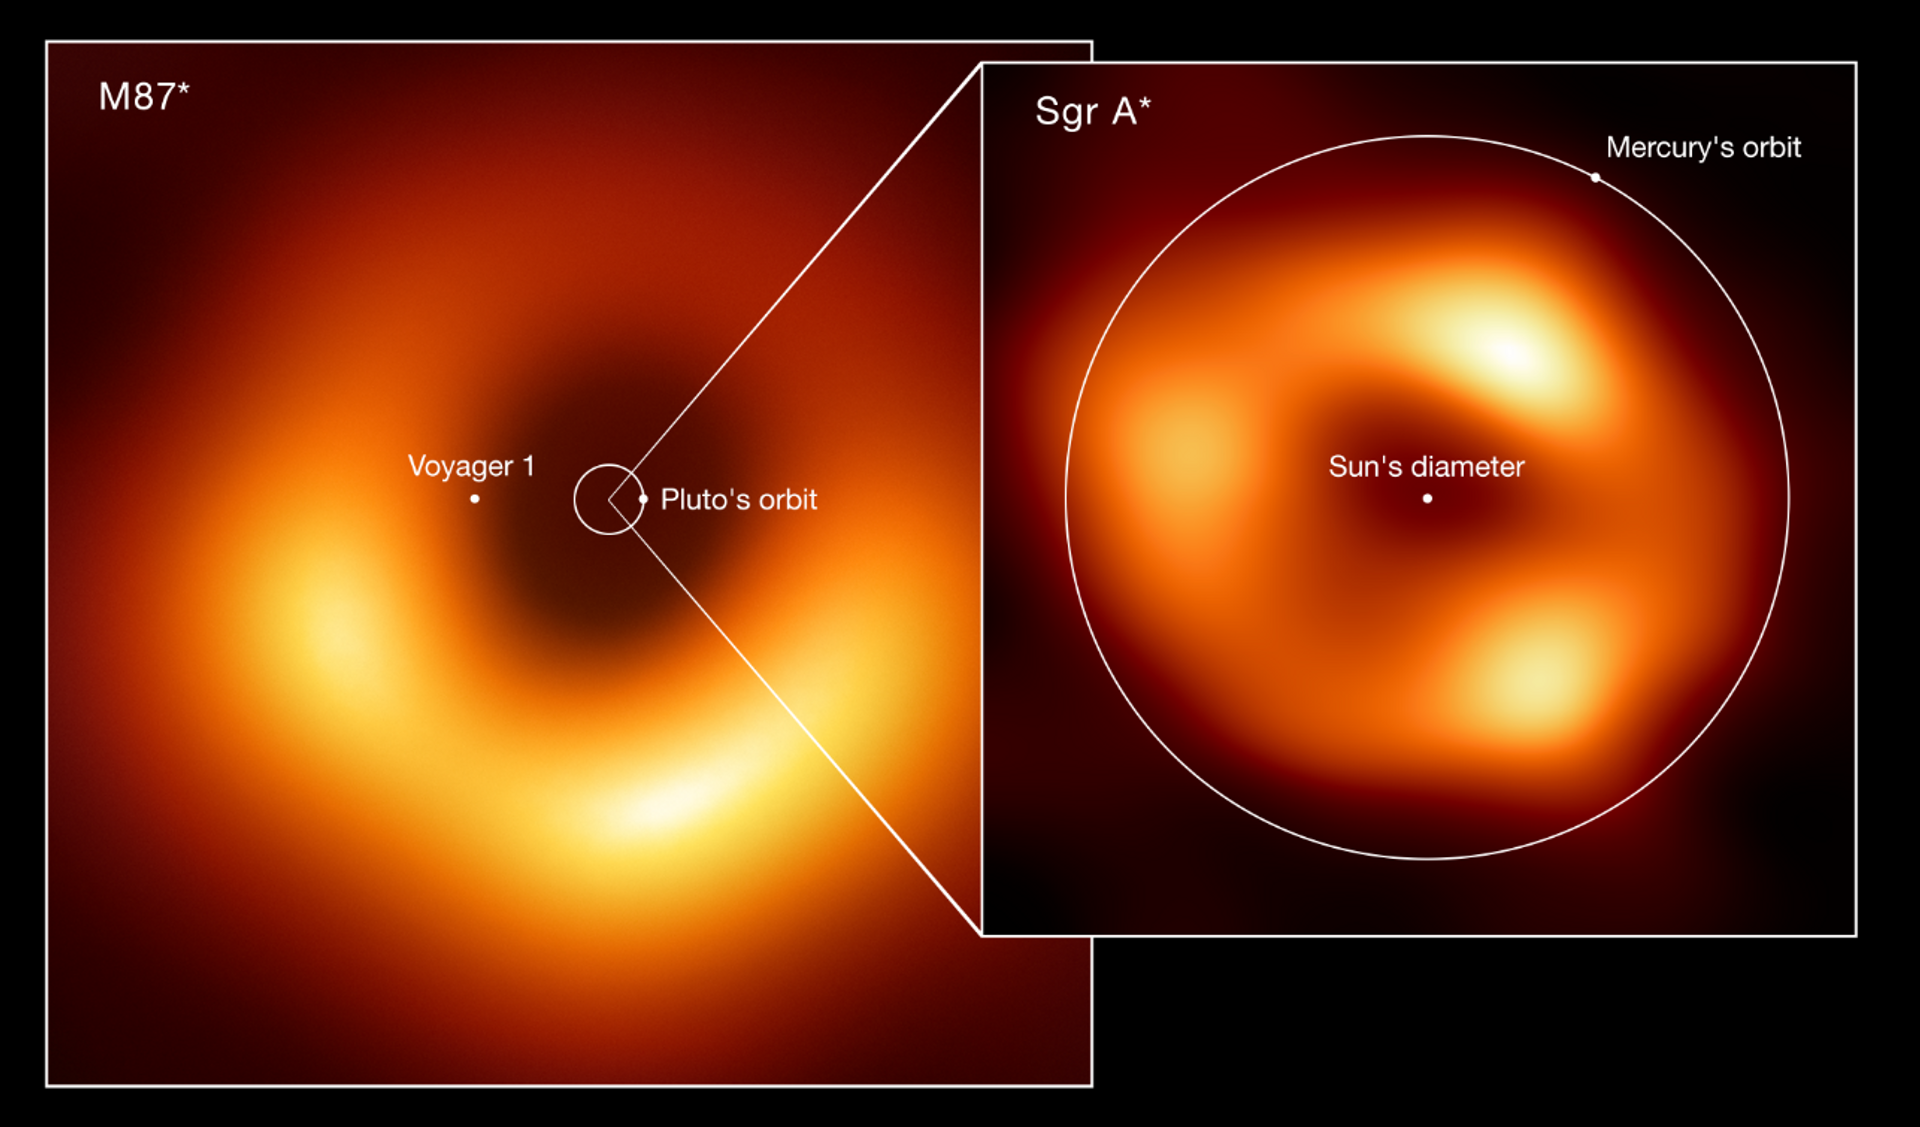 Las primeras imágenes de Sagitarius A, un agujero negro masivo en el centro de la Vía Láctea - Sputnik Mundo, 1920, 12.05.2022